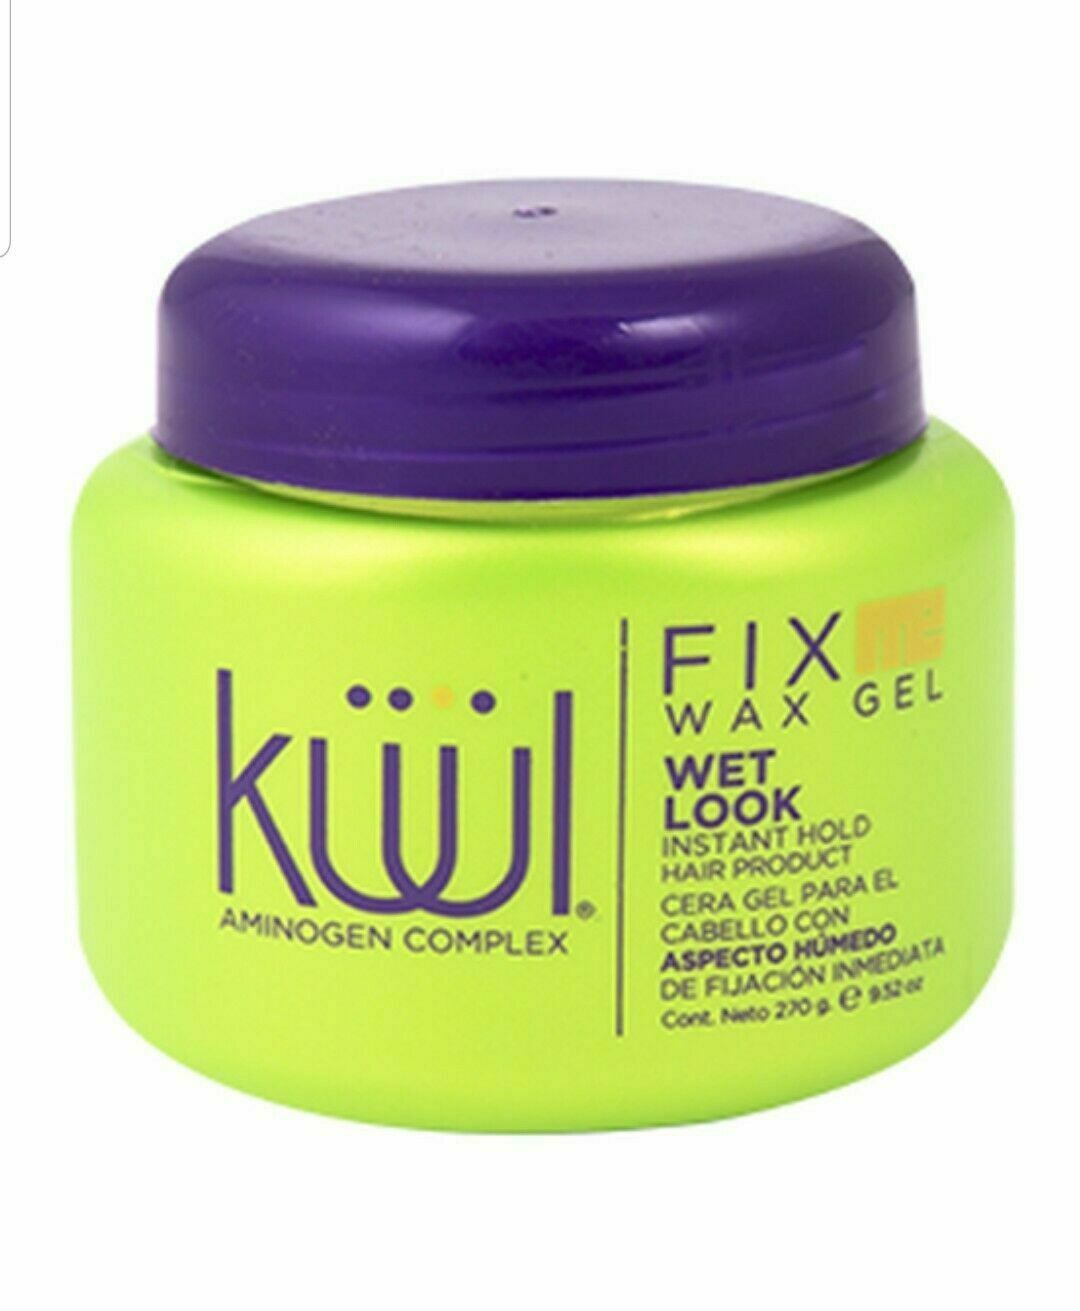 Kuul Fix Me Hair Wax Gel Aminogen Complex Wet Look Instant Hold 9.52 oz